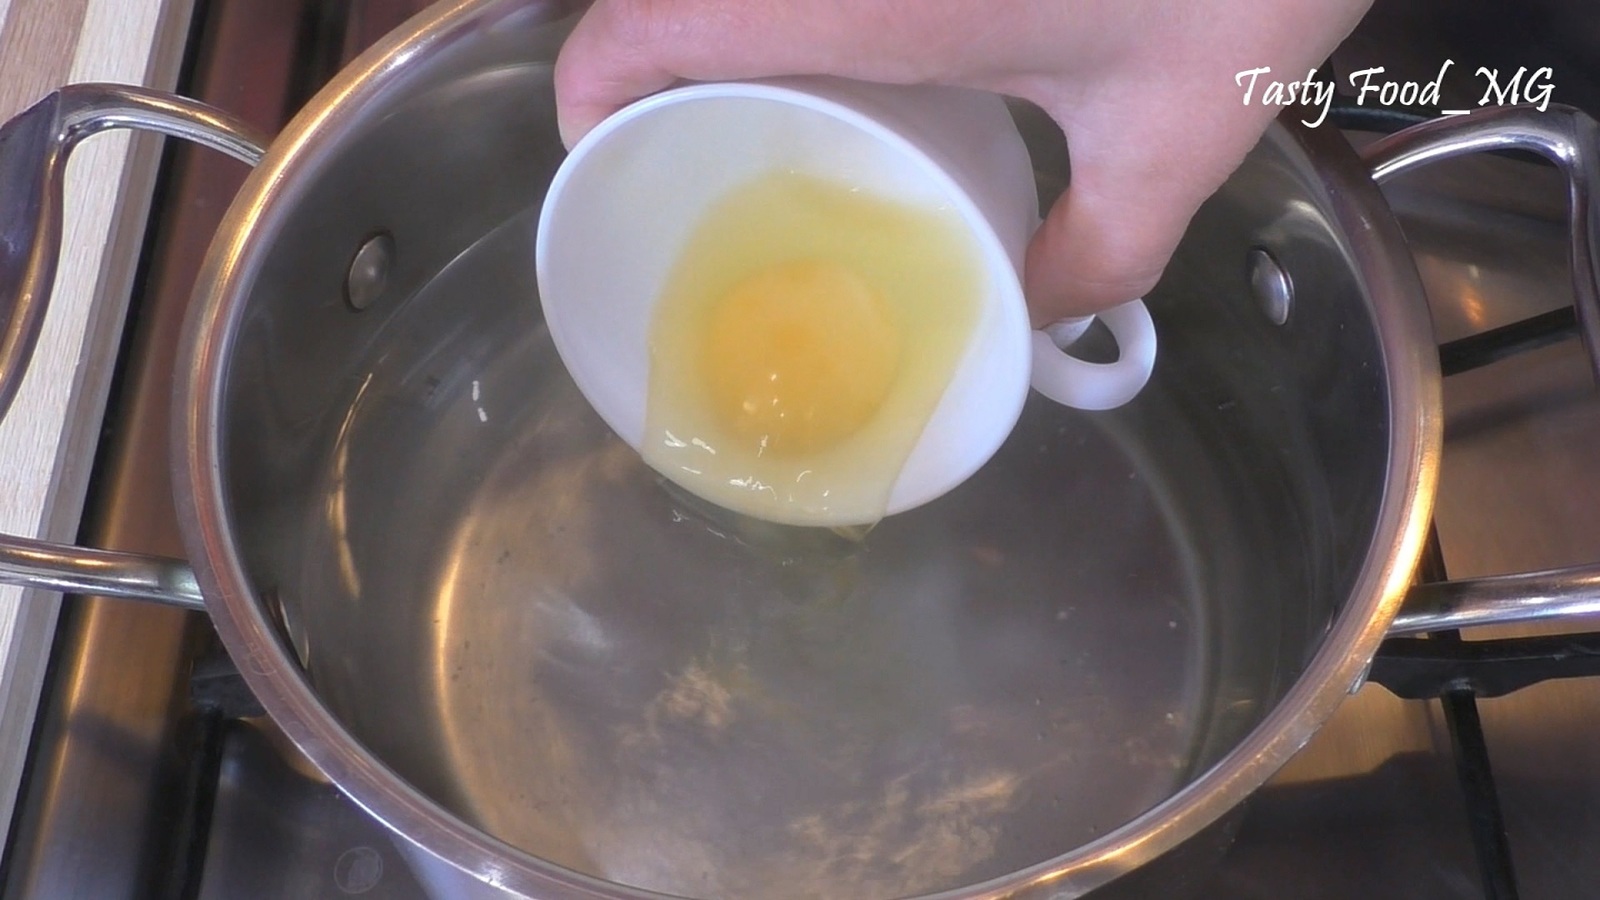 Яйцо пашот как приготовить в домашних условиях на завтрак пошагово с фото рецепт